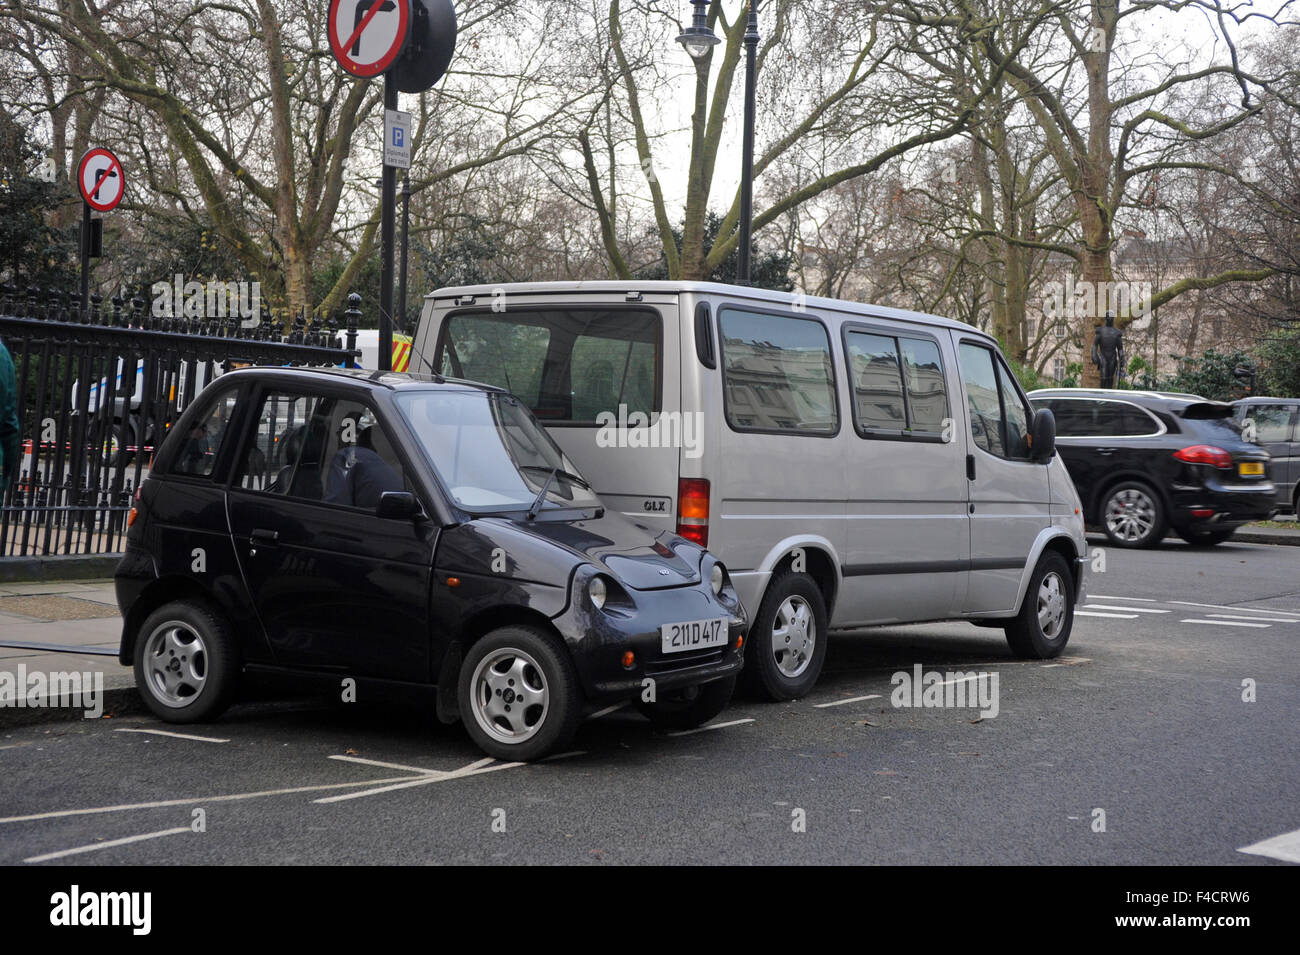 London, UK, 18. Dezember 2014, Smart Auto seitwärts in gemeinsamen Parkplatz geparkt. Stockfoto